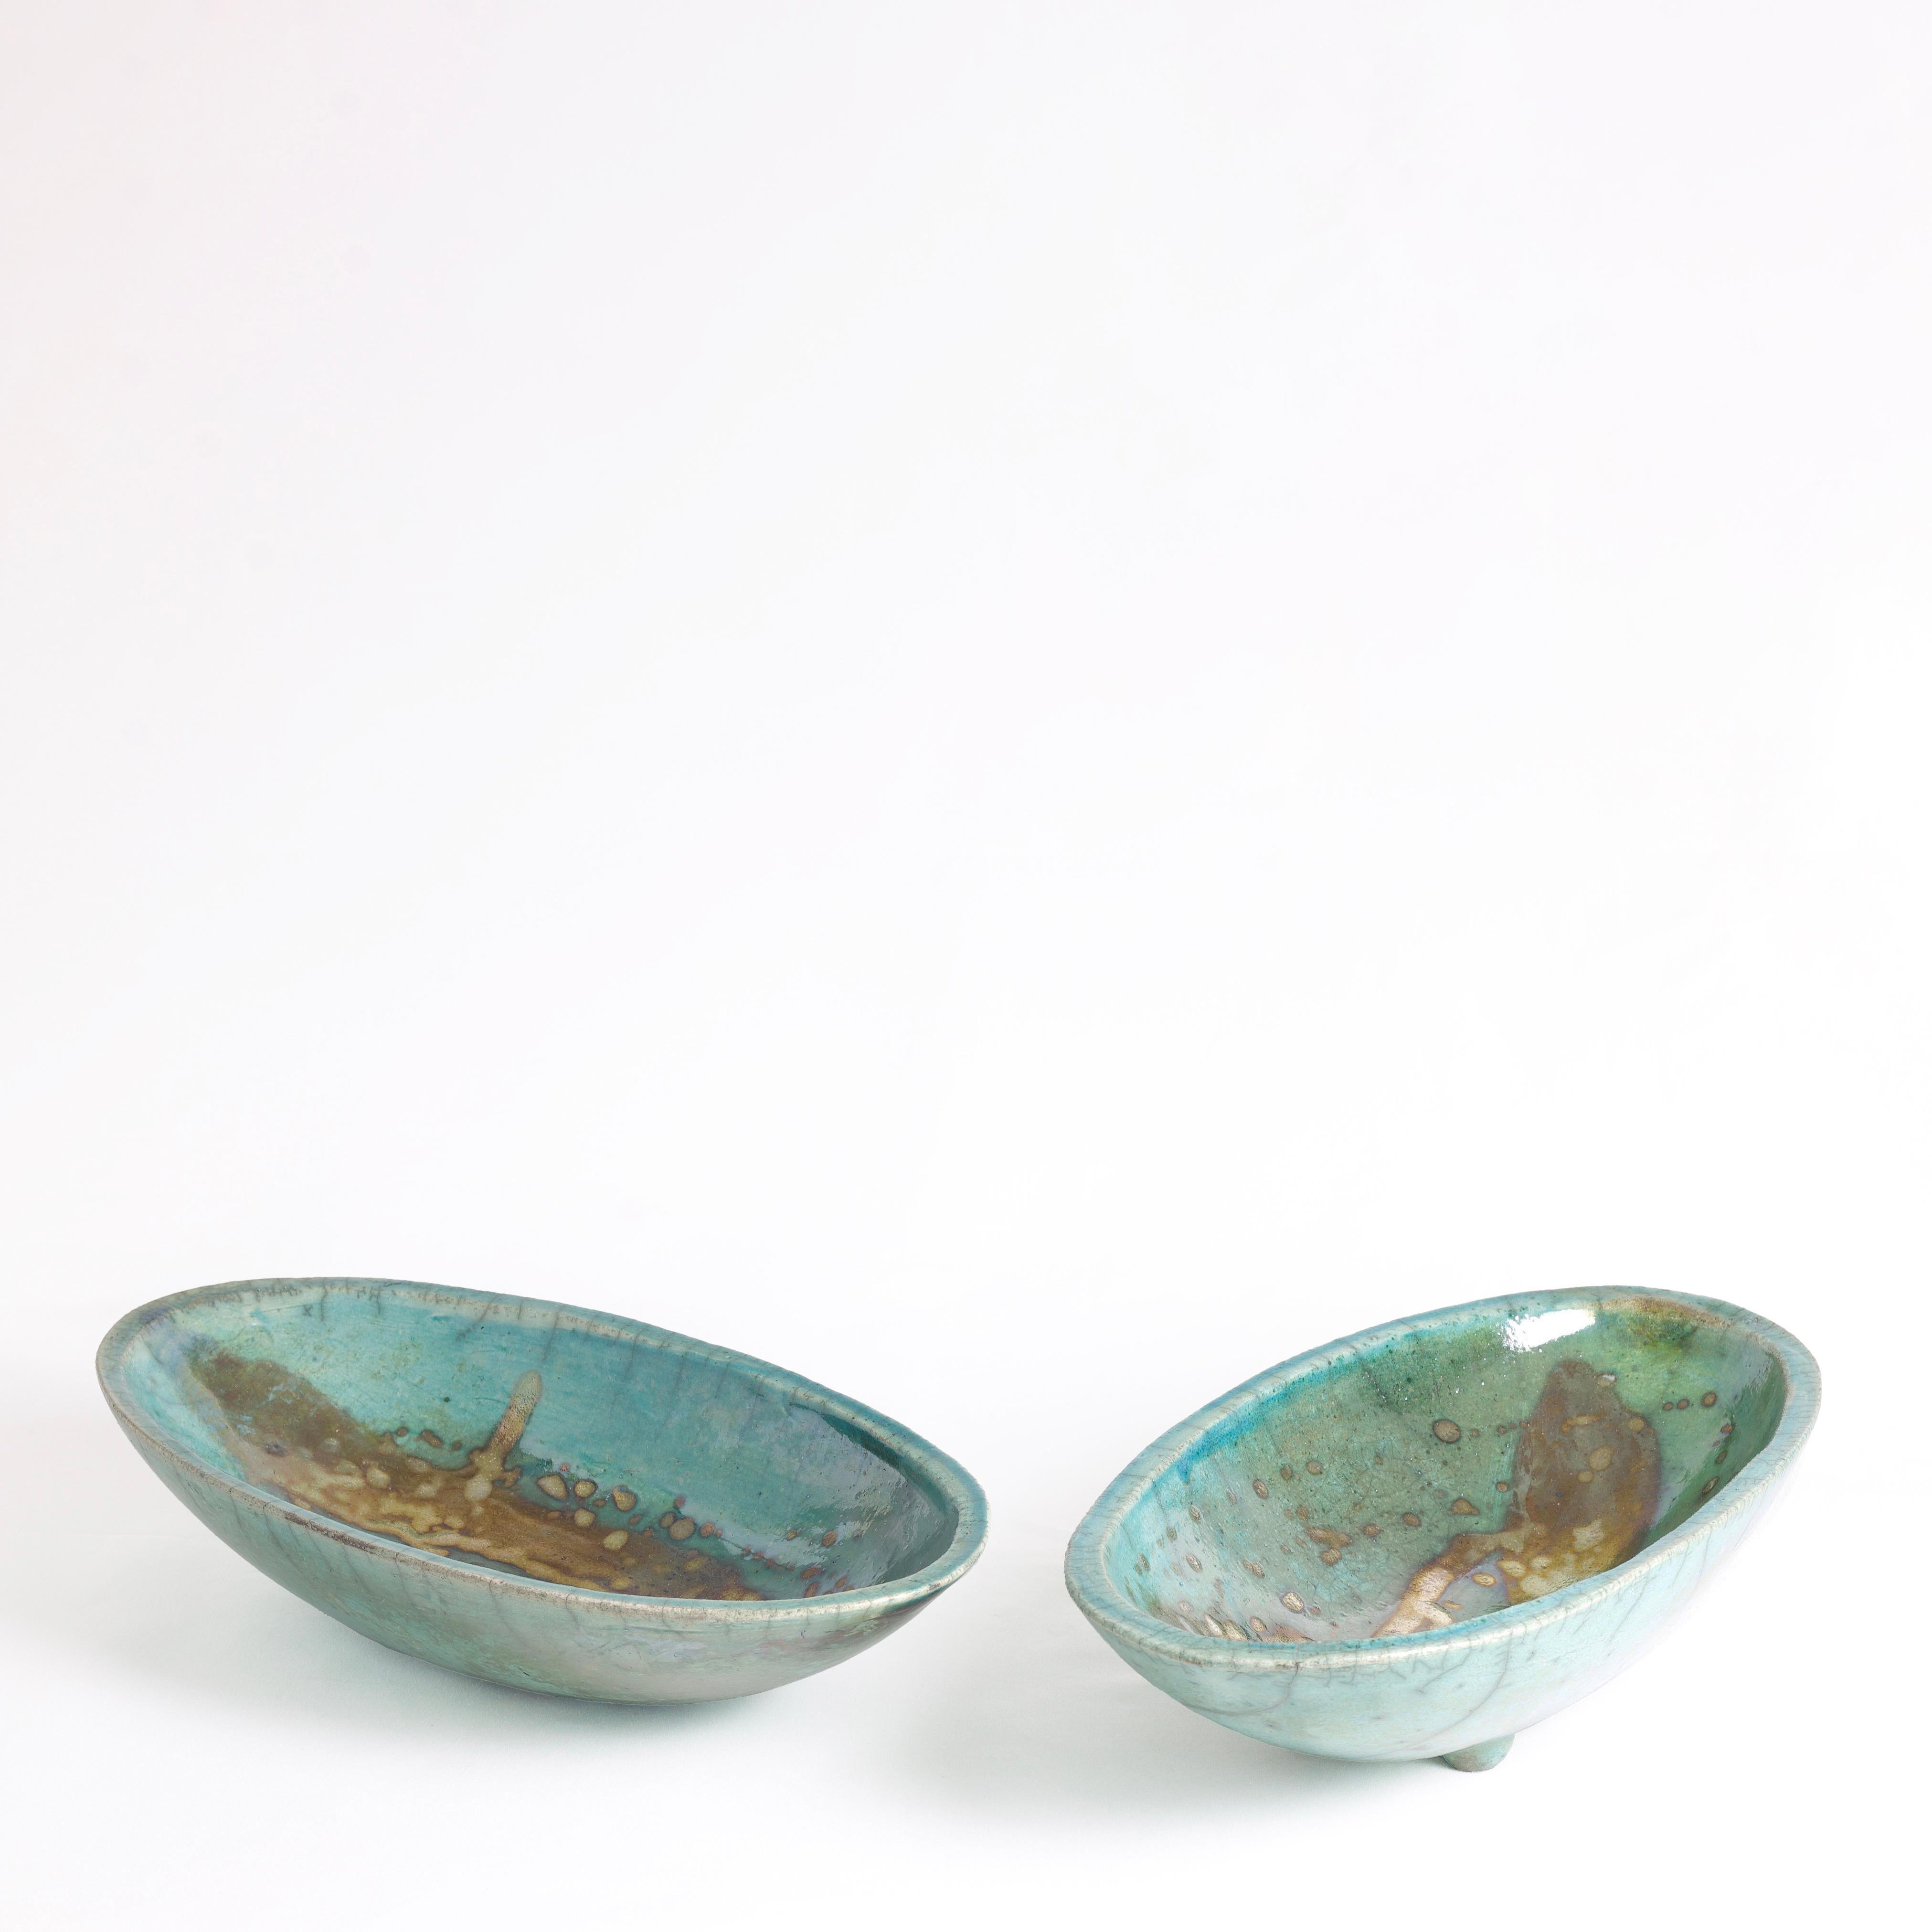 Japanese Modern Long Bowl Legged Raku Ceramic Green Copper For Sale 3